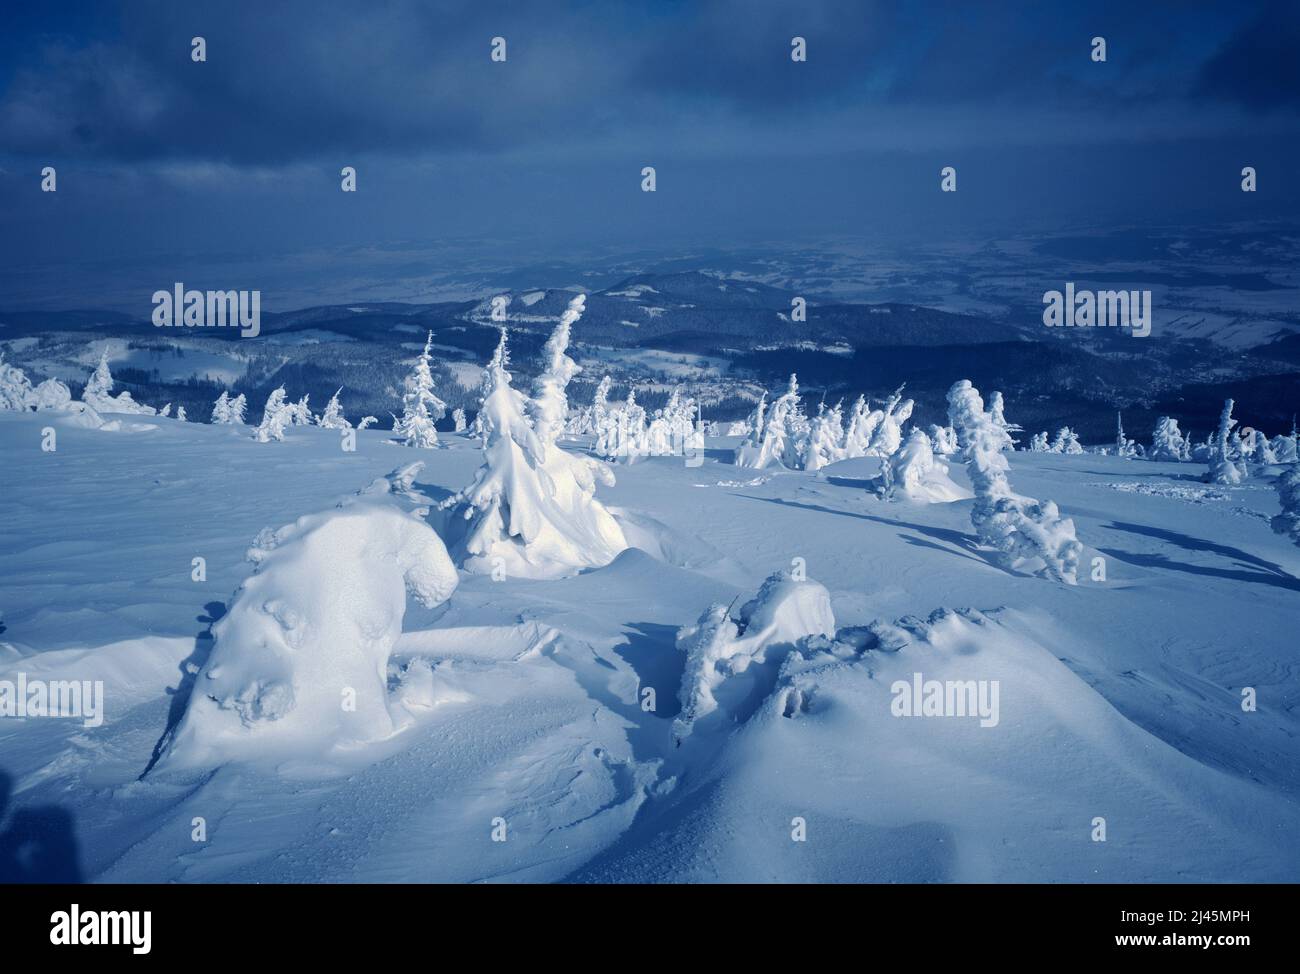 Poland. Scenic winter landscape. Stock Photo